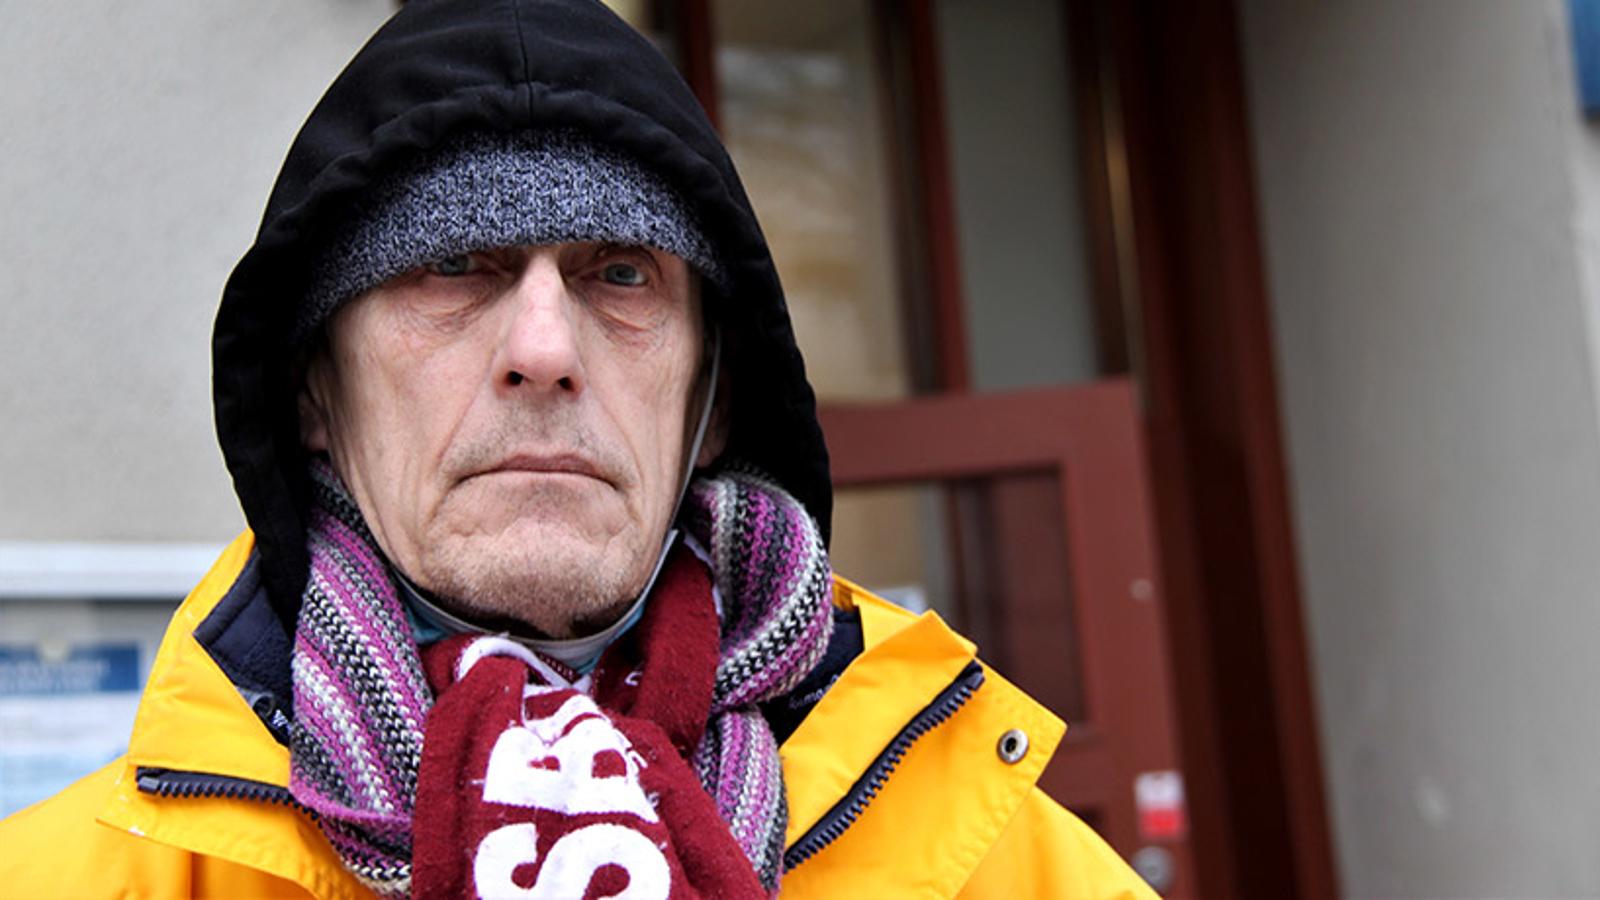 En äldre man, Per-Olof, som står utanför Sociala centret och tittar in i kameran. Han är iklädd en gul jacka, en svart luvtröja, två halsdukar och har en grå mössa på huvudet,